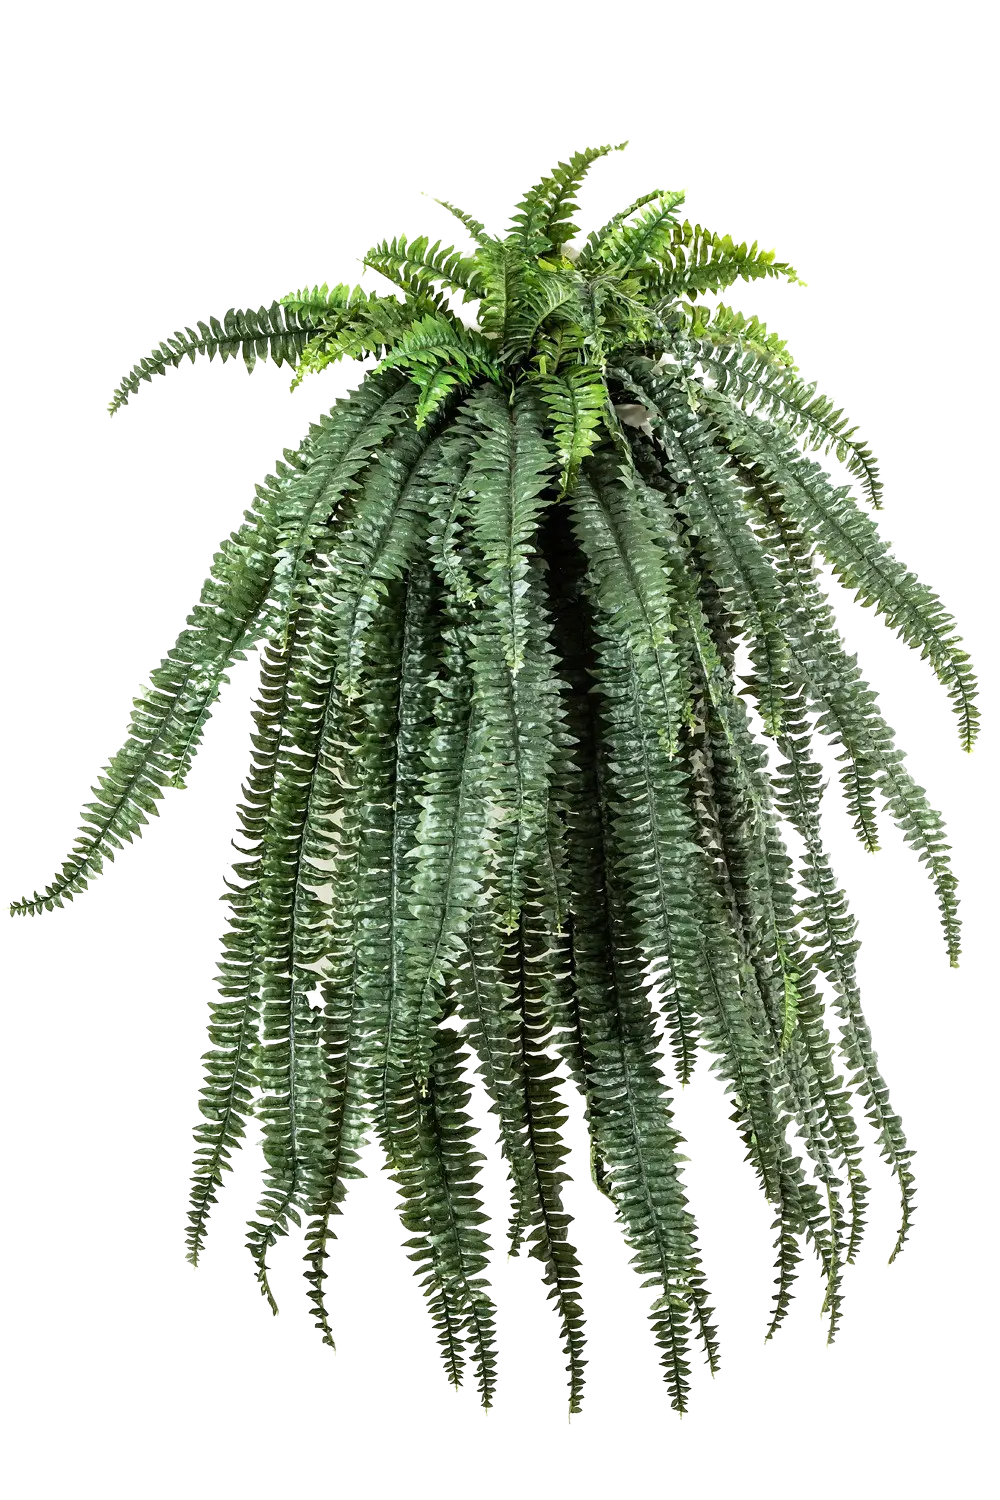 Künstliche Hänge-Farn - Christina auf transparentem Hintergrund mit echt wirkenden Kunstblättern. Diese Kunstpflanze gehört zur Gattung/Familie der "Farne" bzw. "Kunst-Farne".